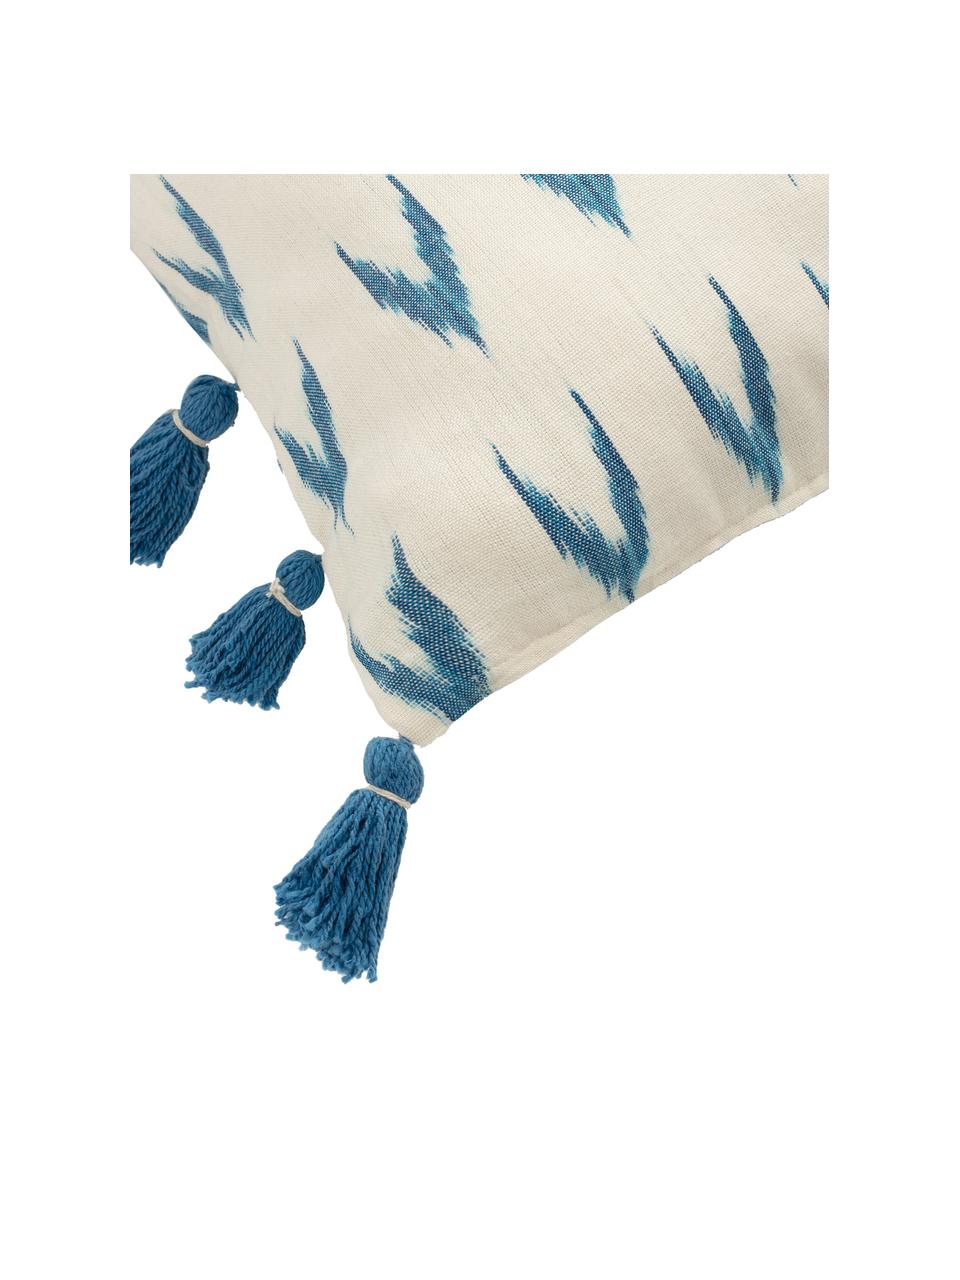 Boho kussenhoes Cala met blauwe kwastjes, 100% katoen, Blauw, wit, 45 x 45 cm